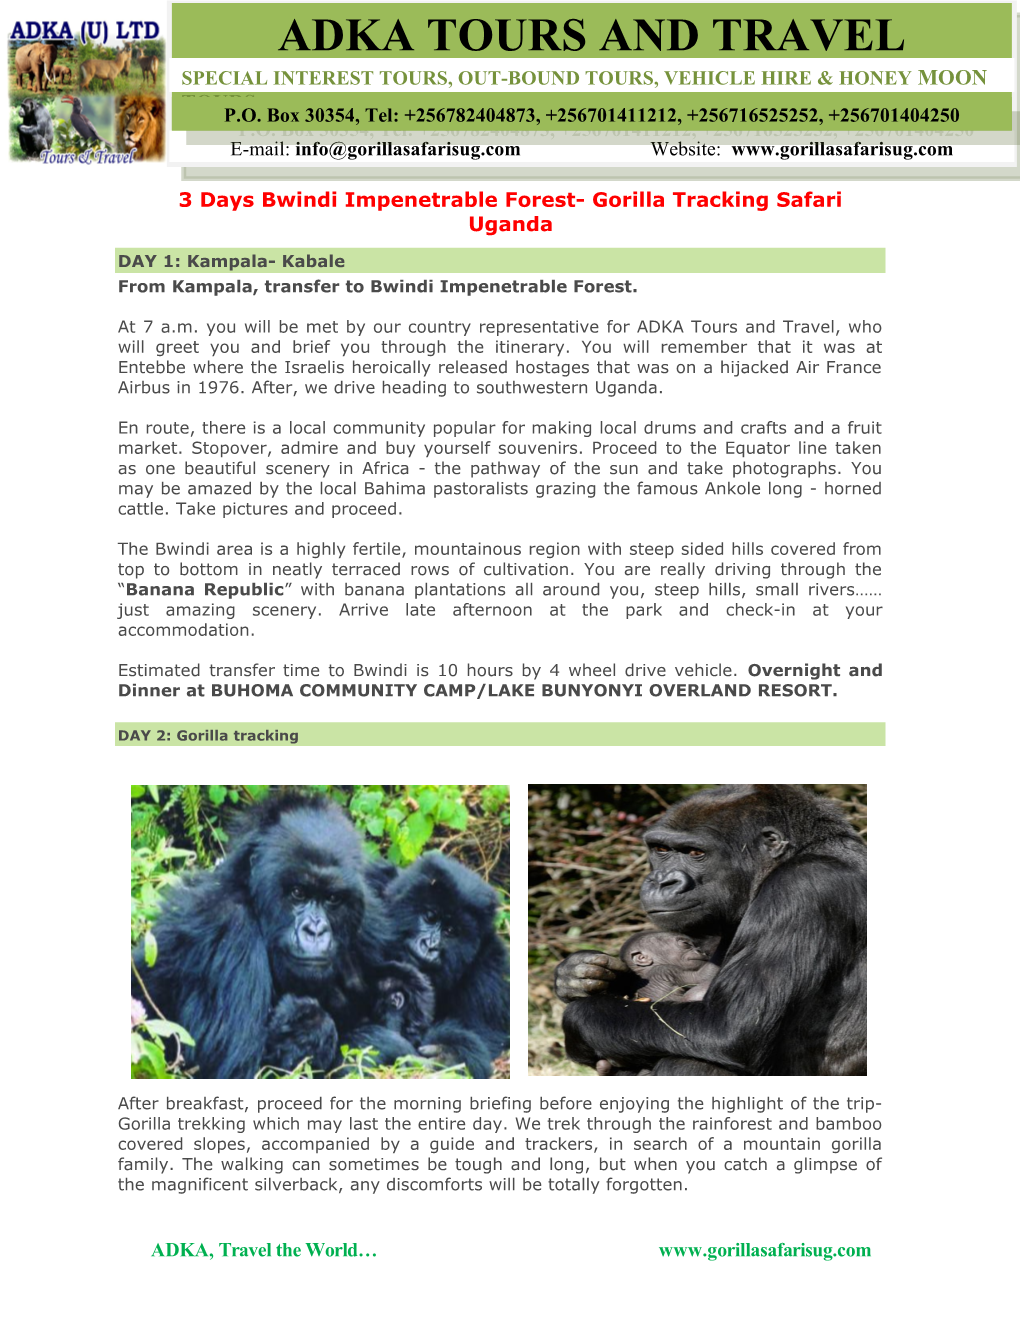 4 Days Bwindi Impenetrable Forest- Gorilla Tracking Safari Uganda